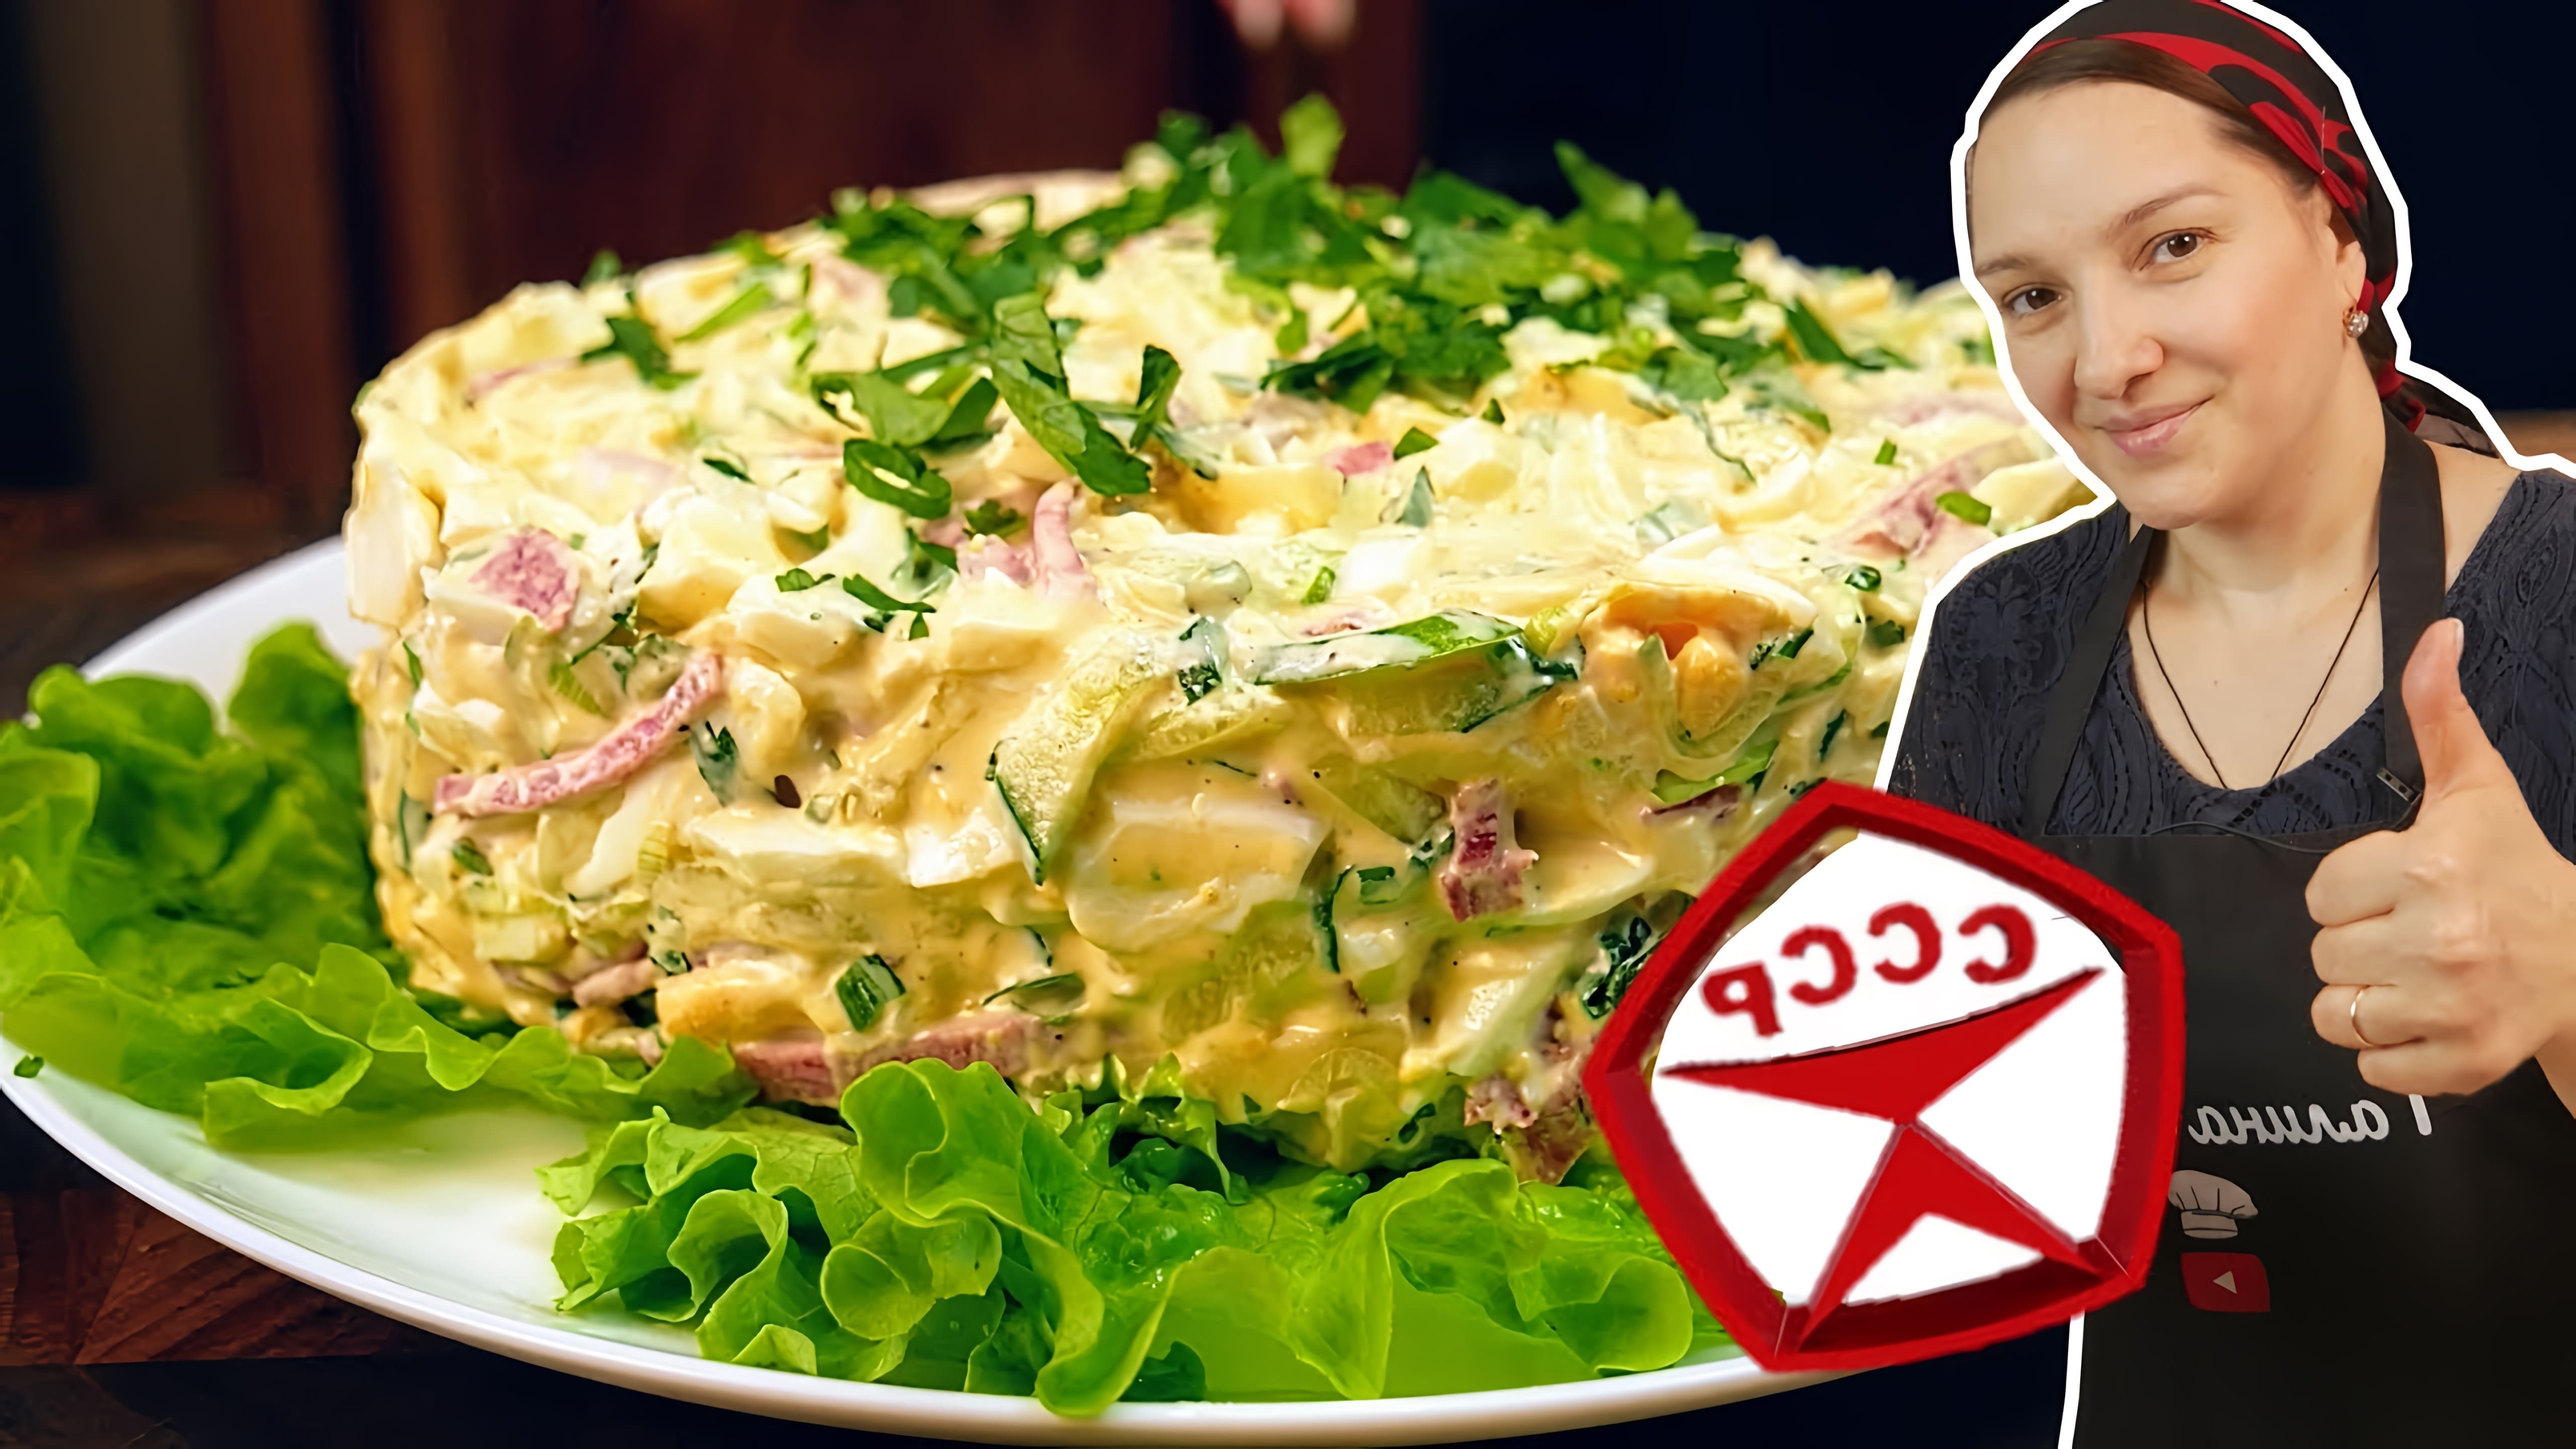 В этом видео демонстрируется процесс приготовления салата из варено-копченой колбасы, огурца, сыра, яиц и зелени